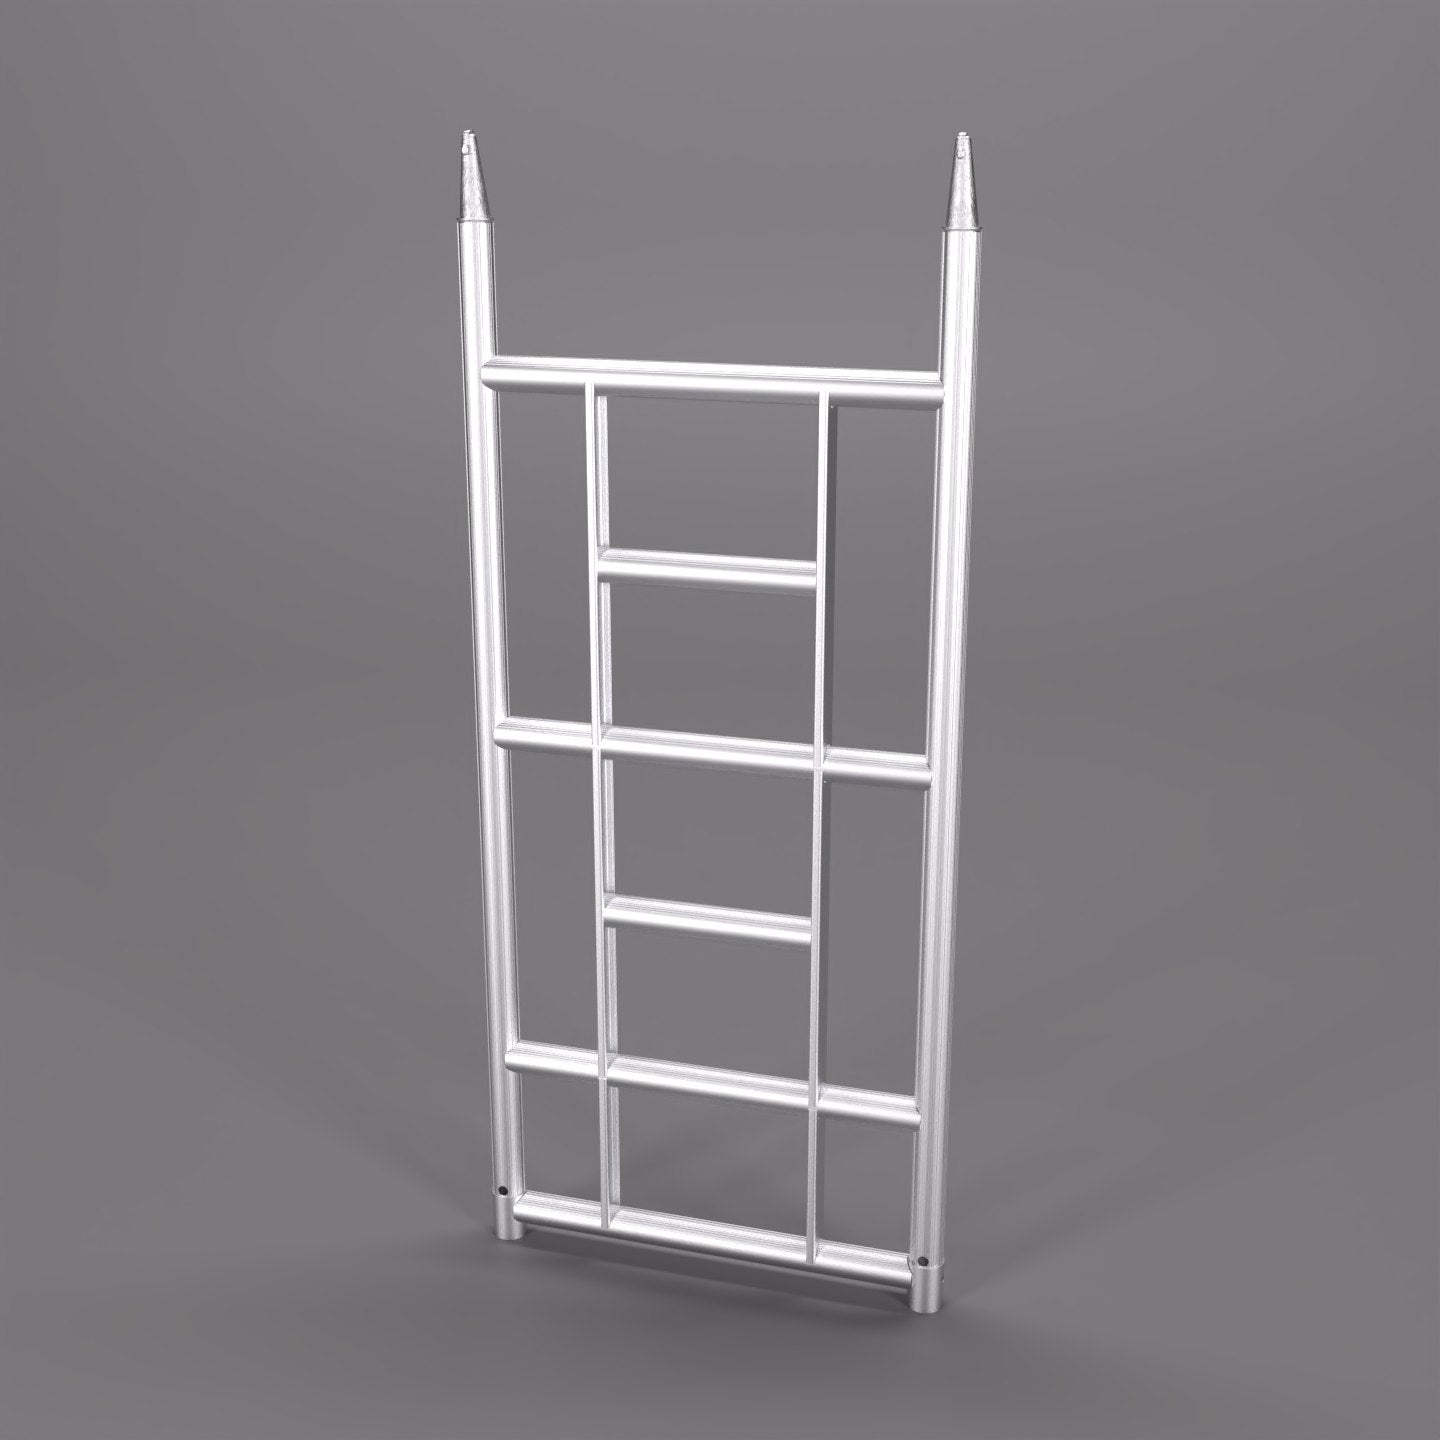 Stairwell 3 Rung Ladder Frame